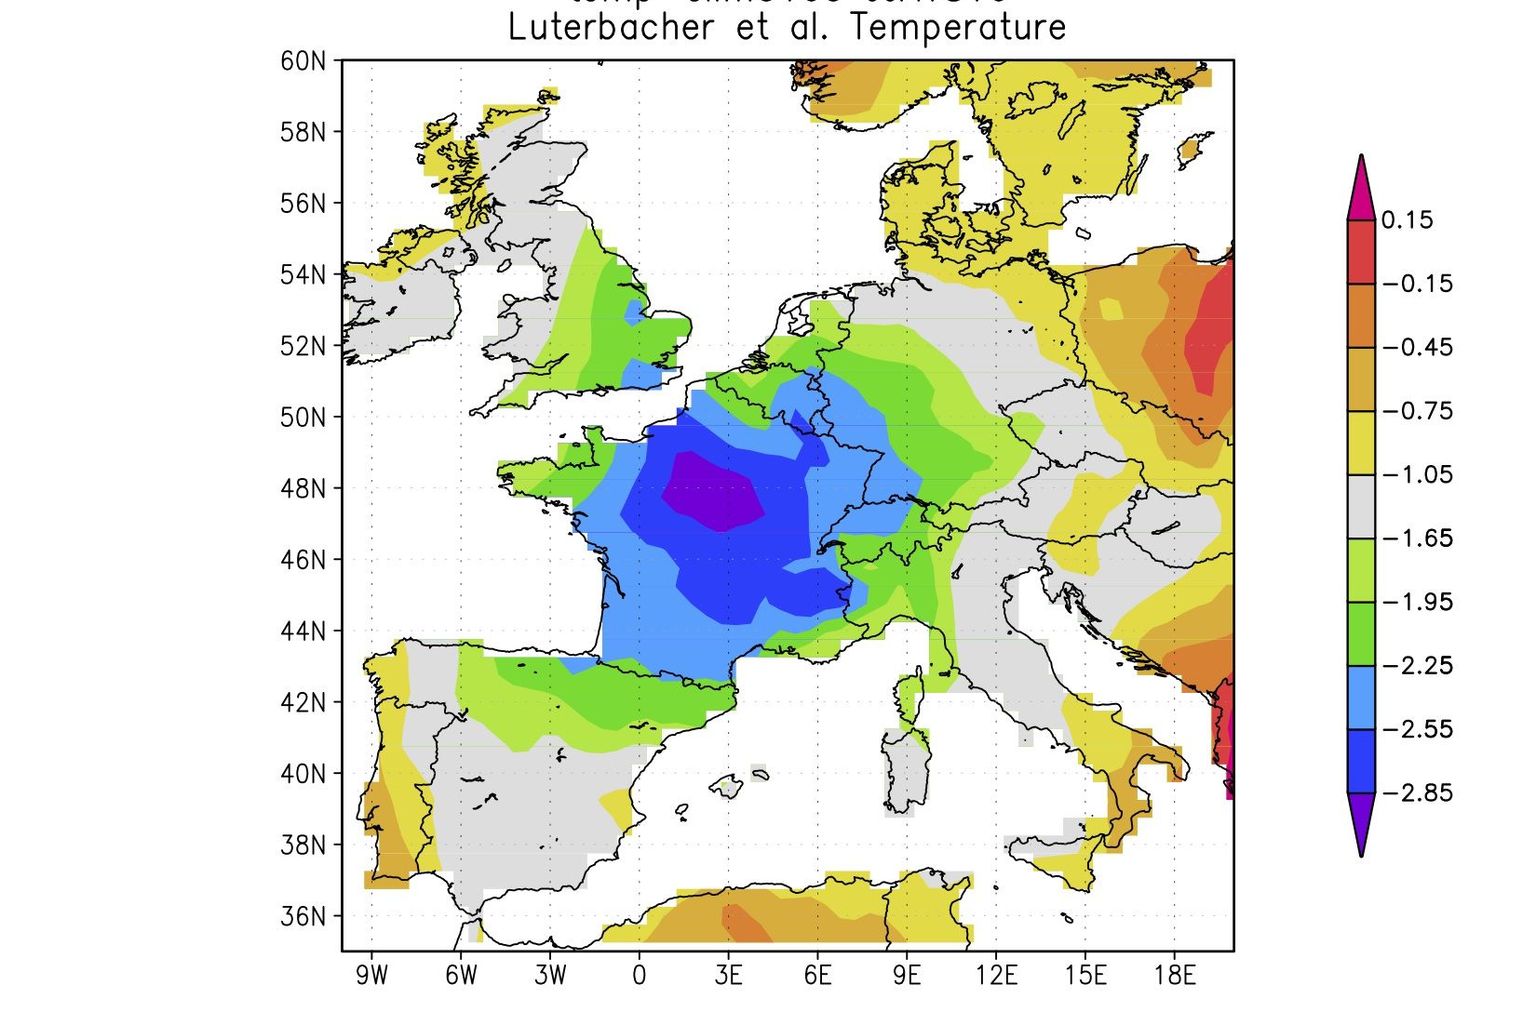 Les anomalies de température en Europe durant l'été 1816. Les régions violettes et bleues furent les plus froides, en rouge les plus chaudes.